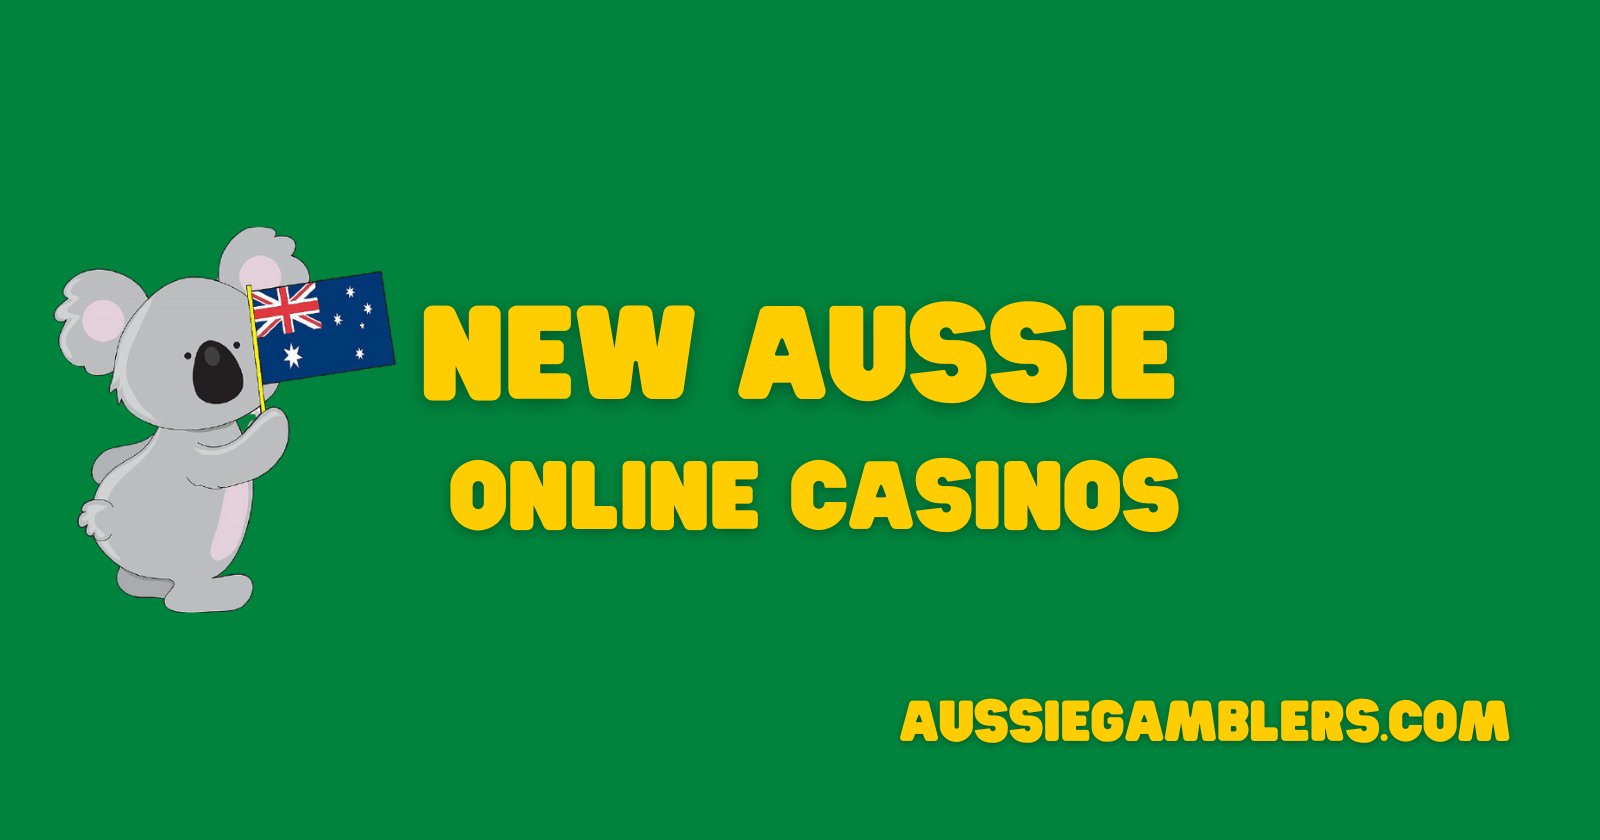 New Aussie Casinos banner